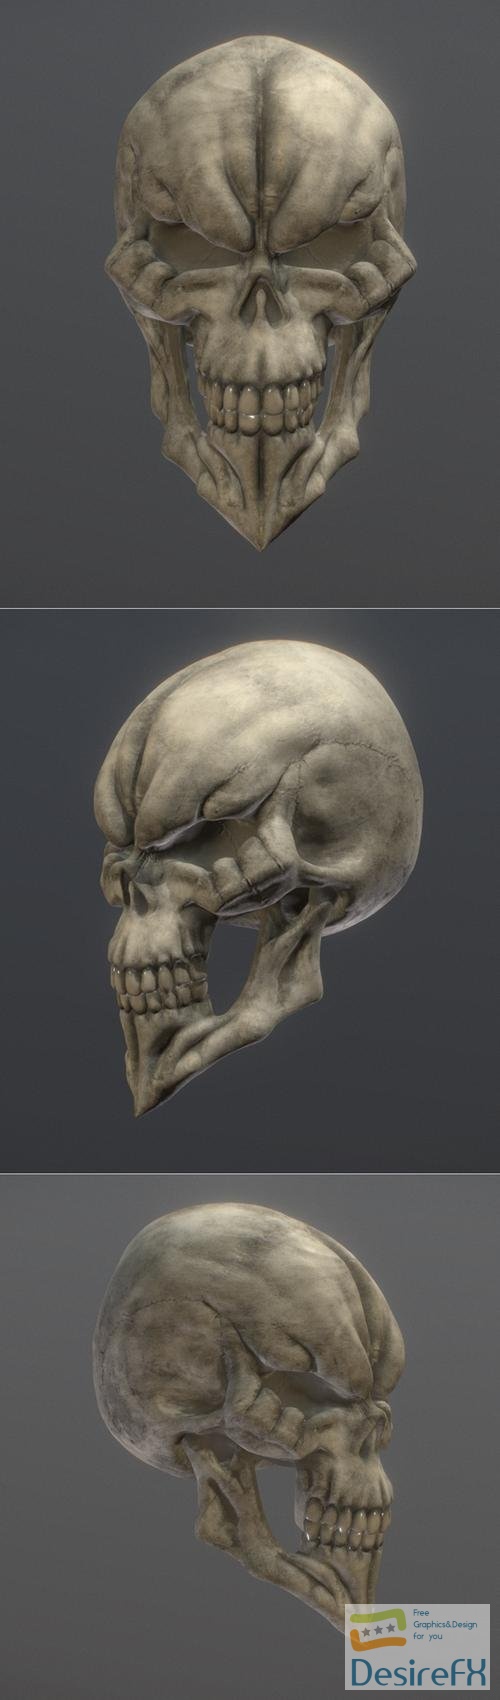 King of the Dead Skull – 3D Print